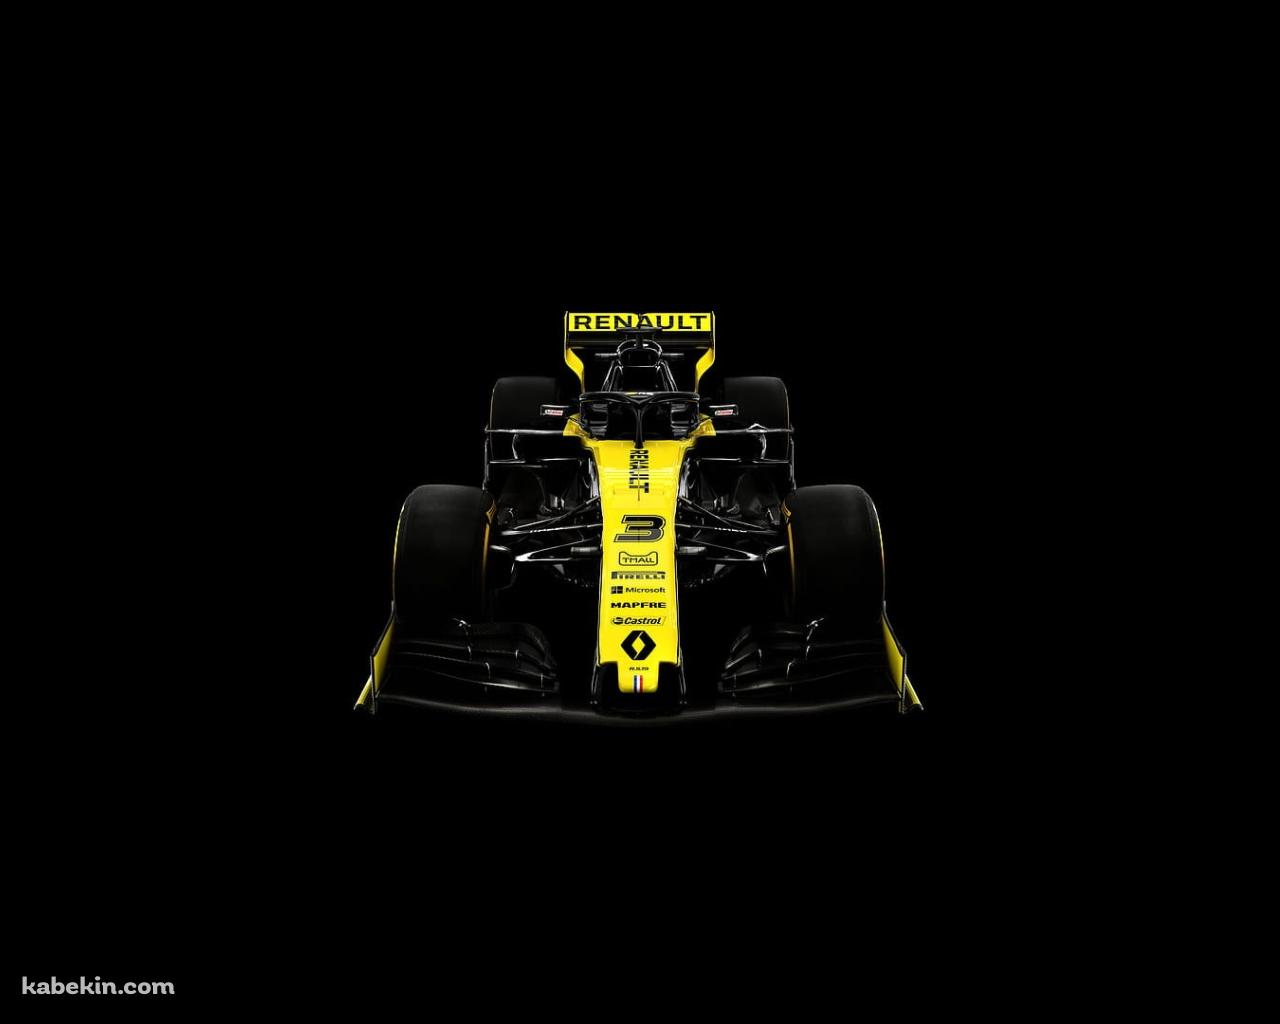 ルノー / F1 / ダニエル・リカルド / Daniel Ricciardoの壁紙(1280px x 1024px) 高画質 PC・デスクトップ用